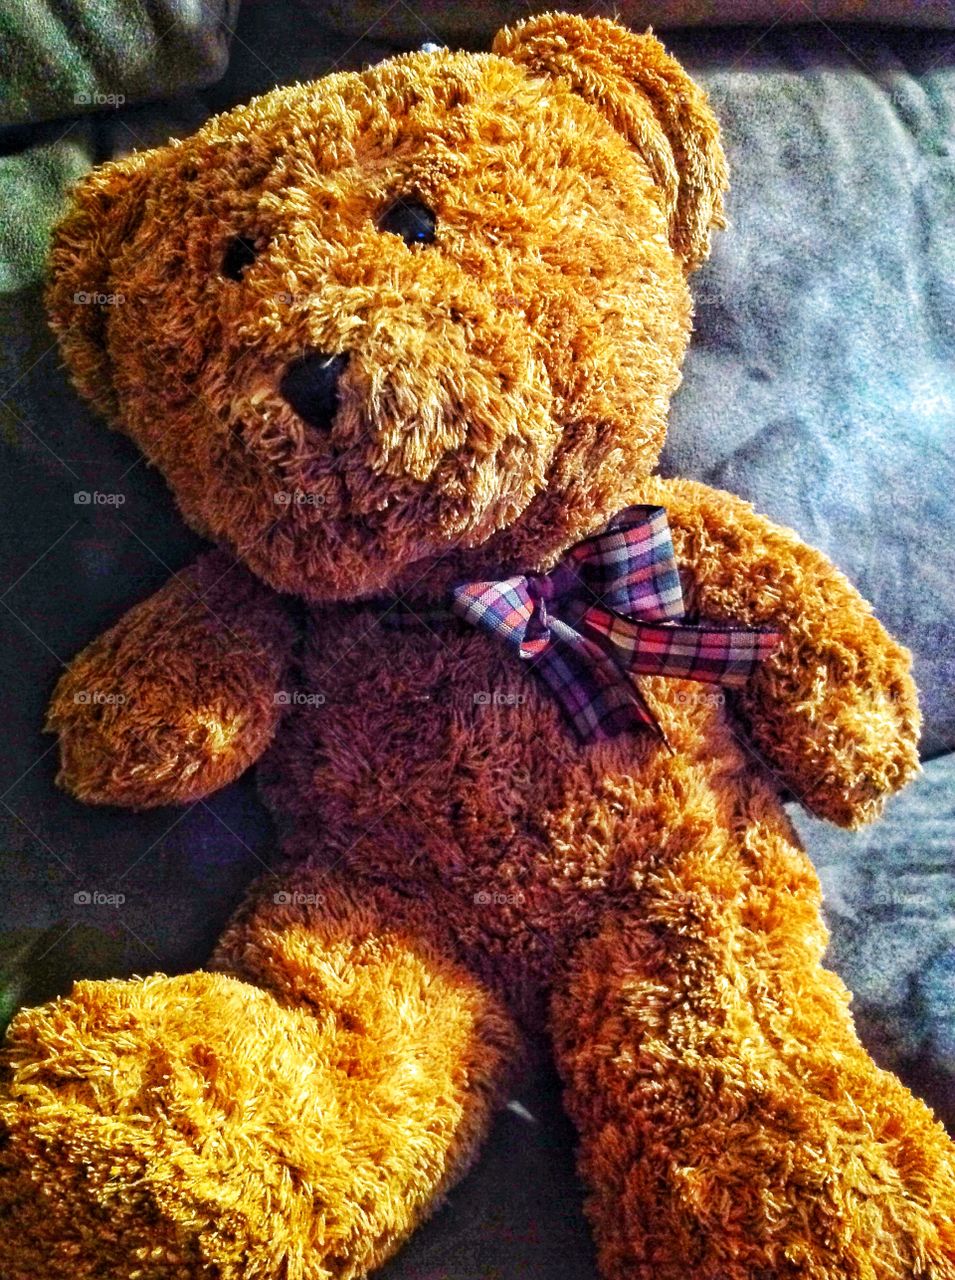 Teddy a kids best friend